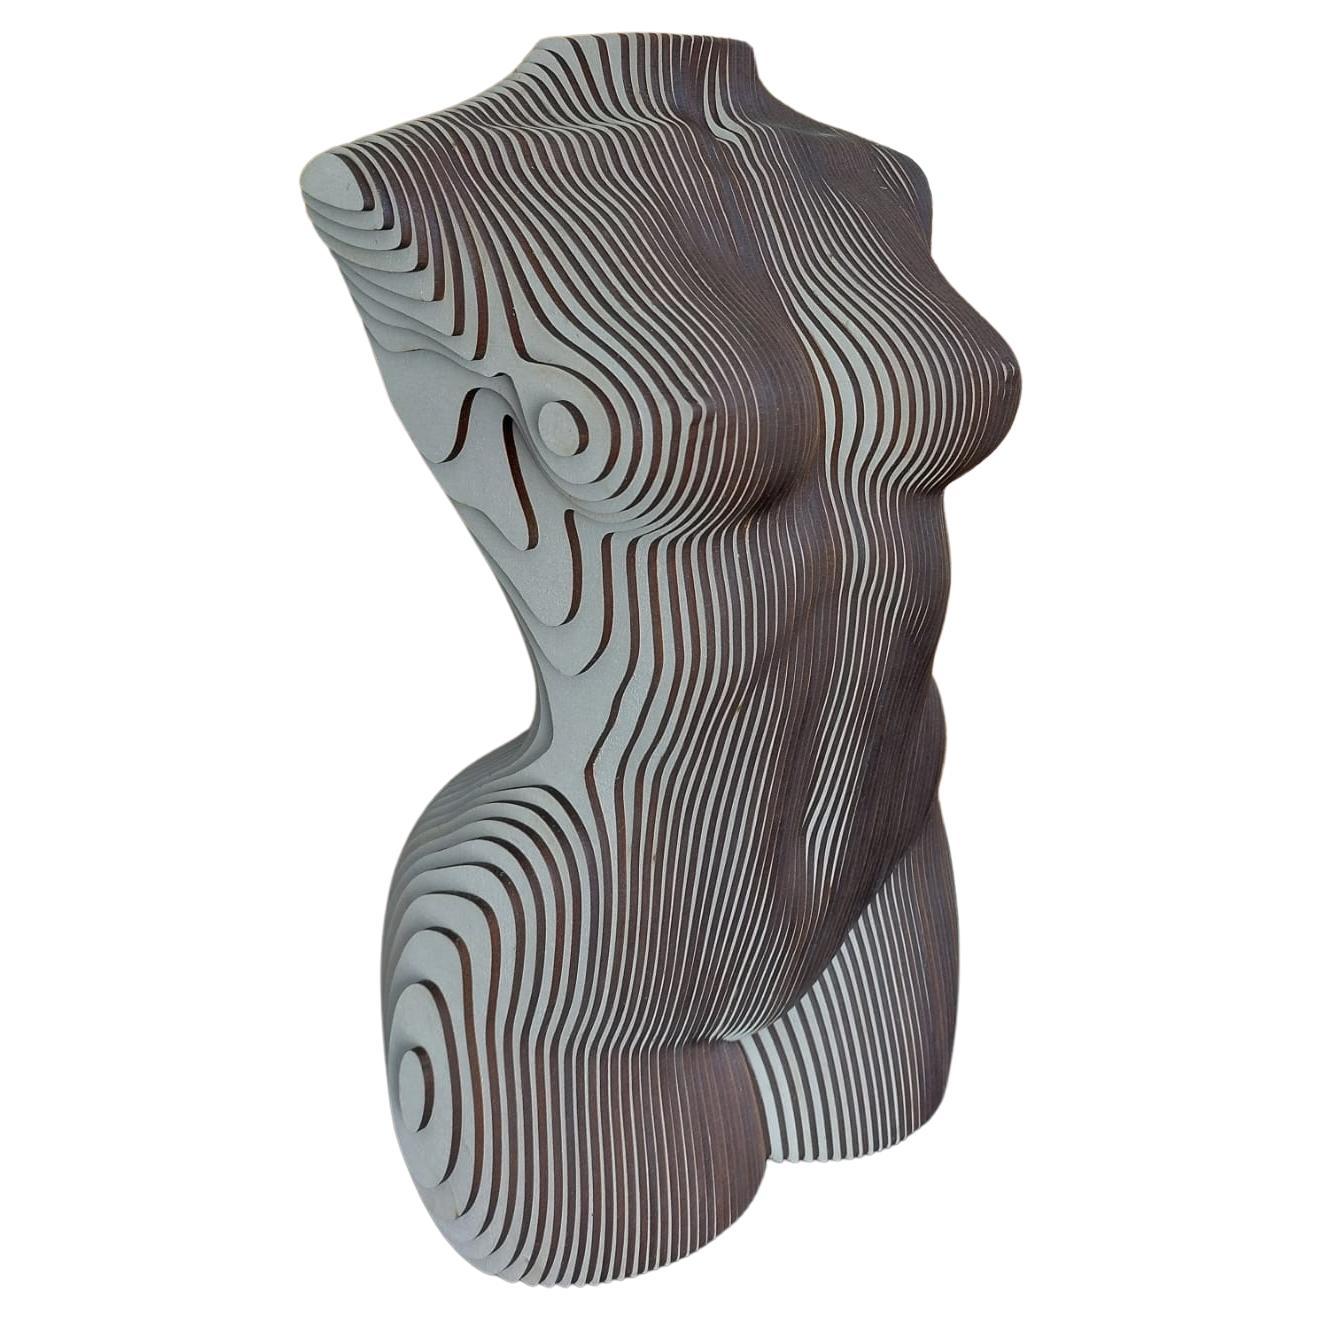 Sculpture de torse de femme blanche en bois MDF